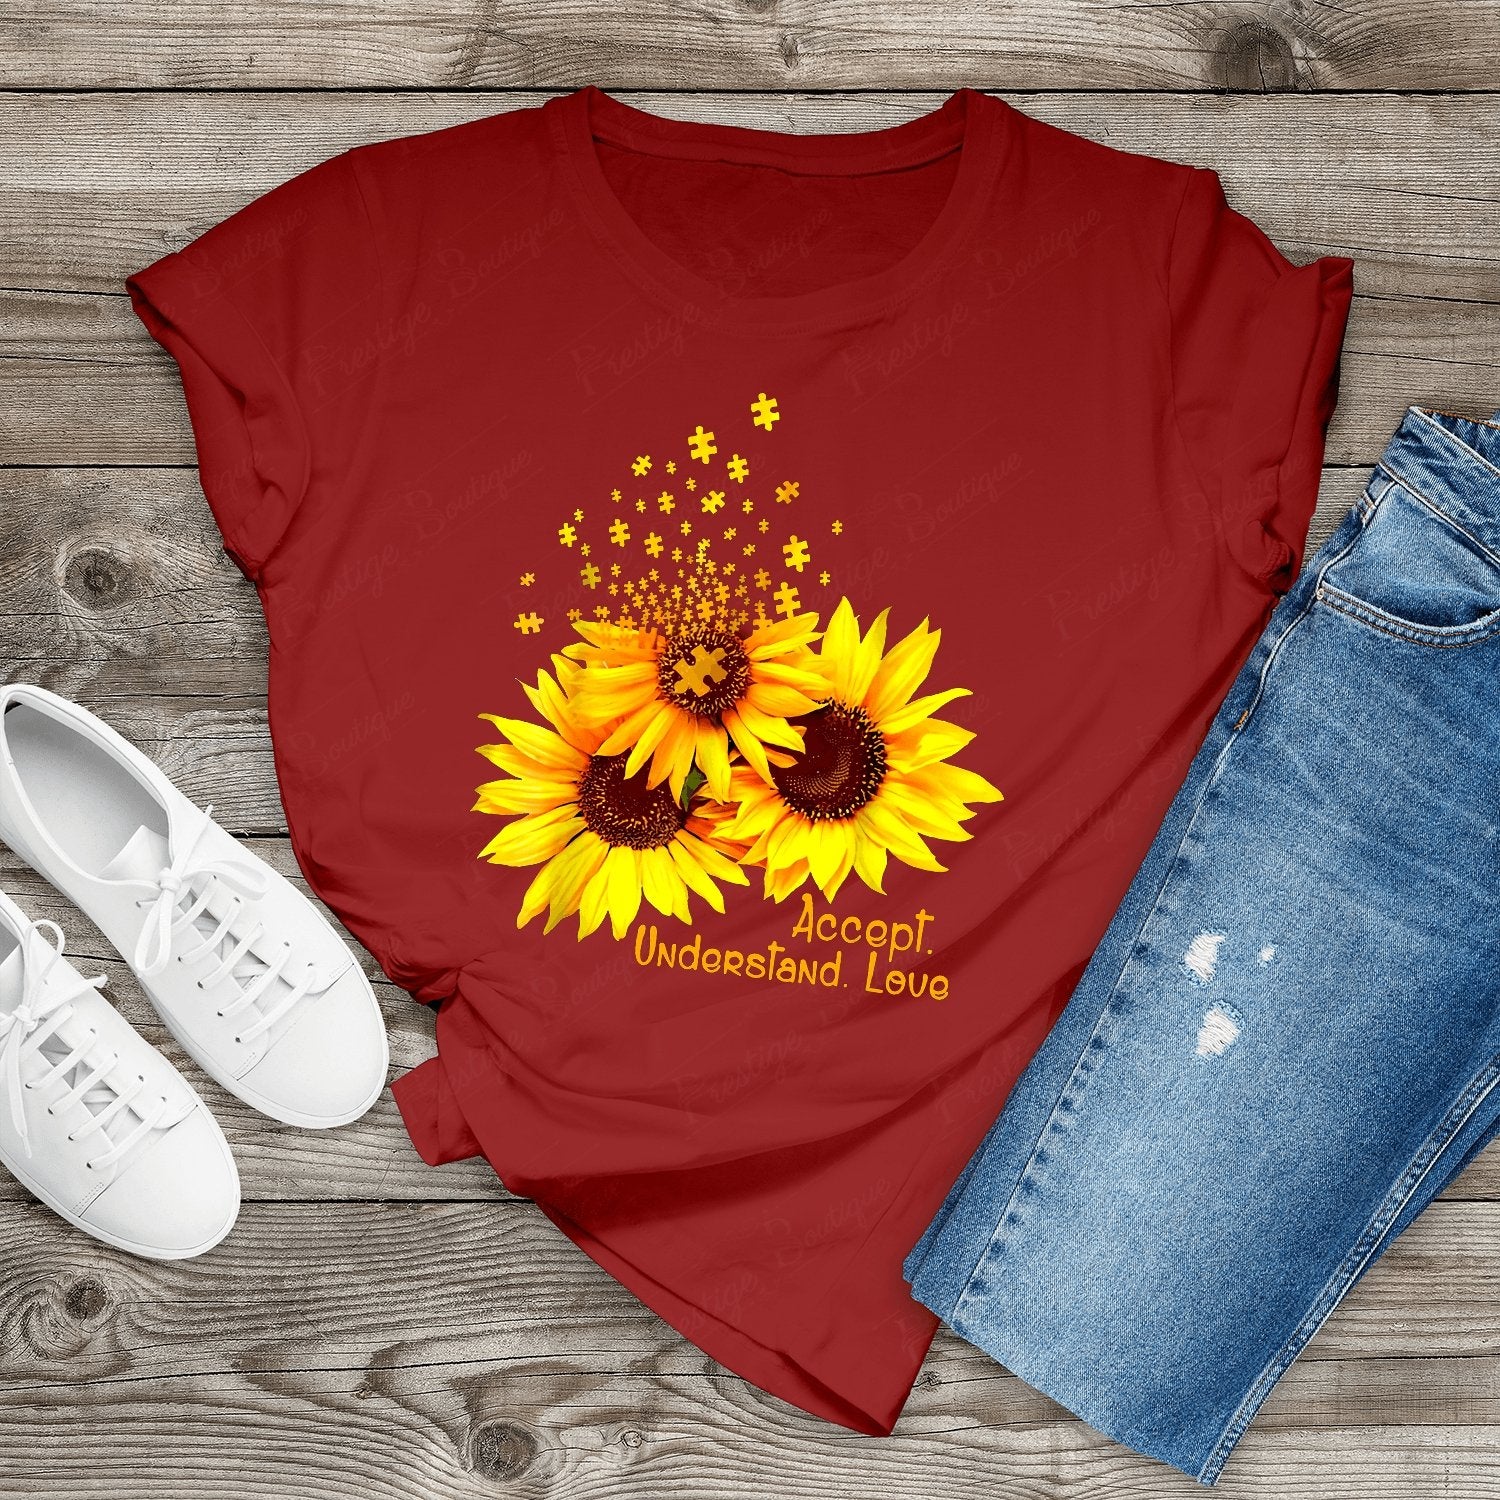 Tricou Floare Soarelui Accept understand love - Prestigeboutique.ro